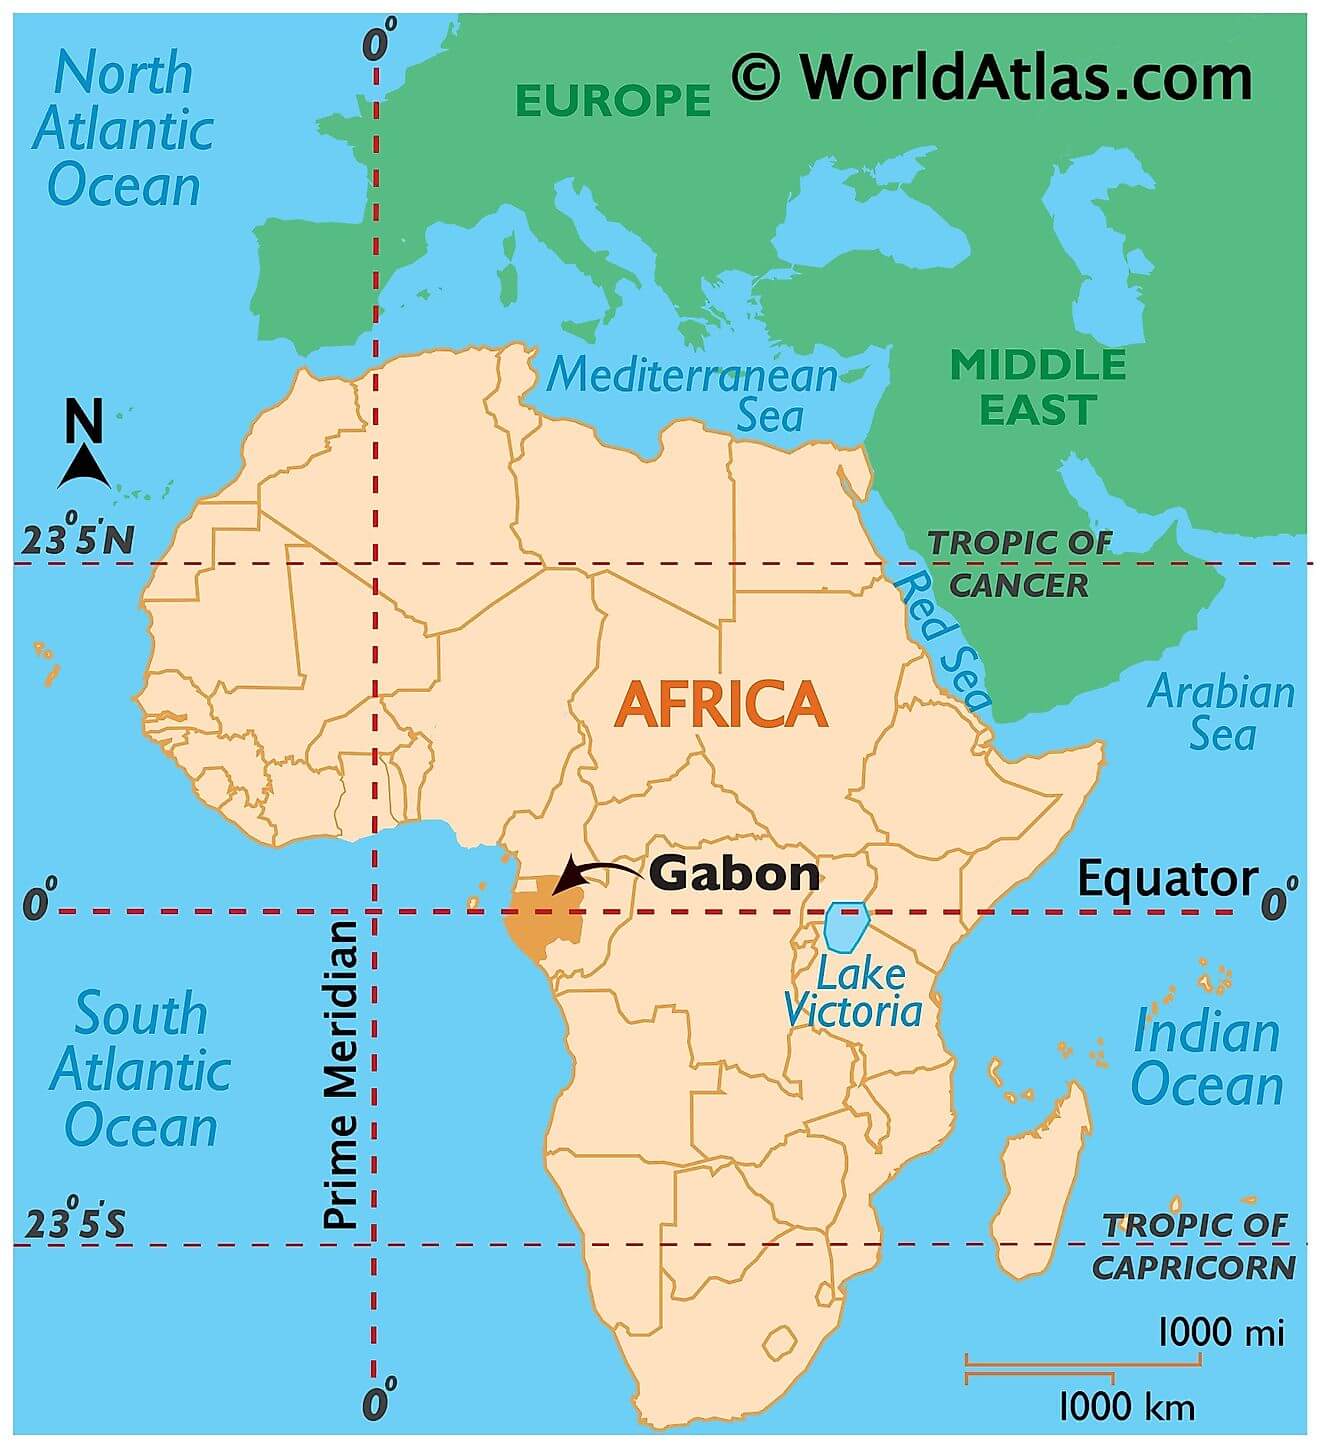 Gabon ở đâu?